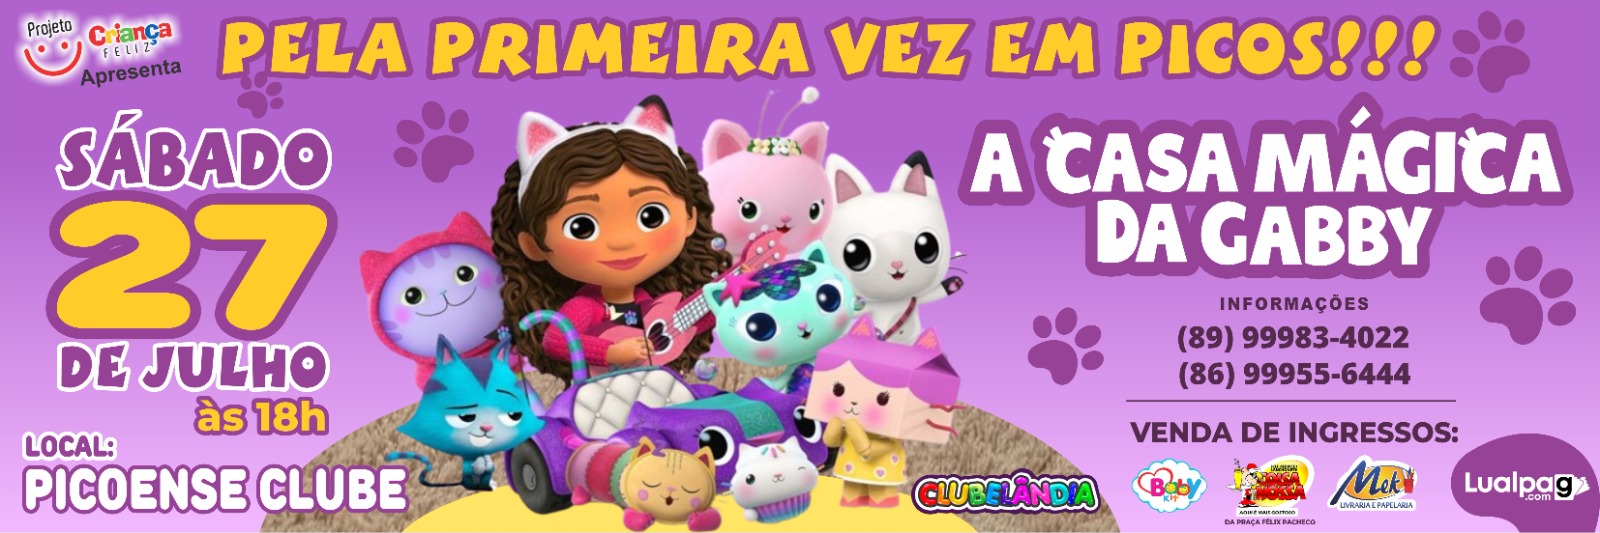 Pela primeira vez em Picos, dia 27 de julho o espetáculo infantil: A CASA  MÁGICA DA GABBY